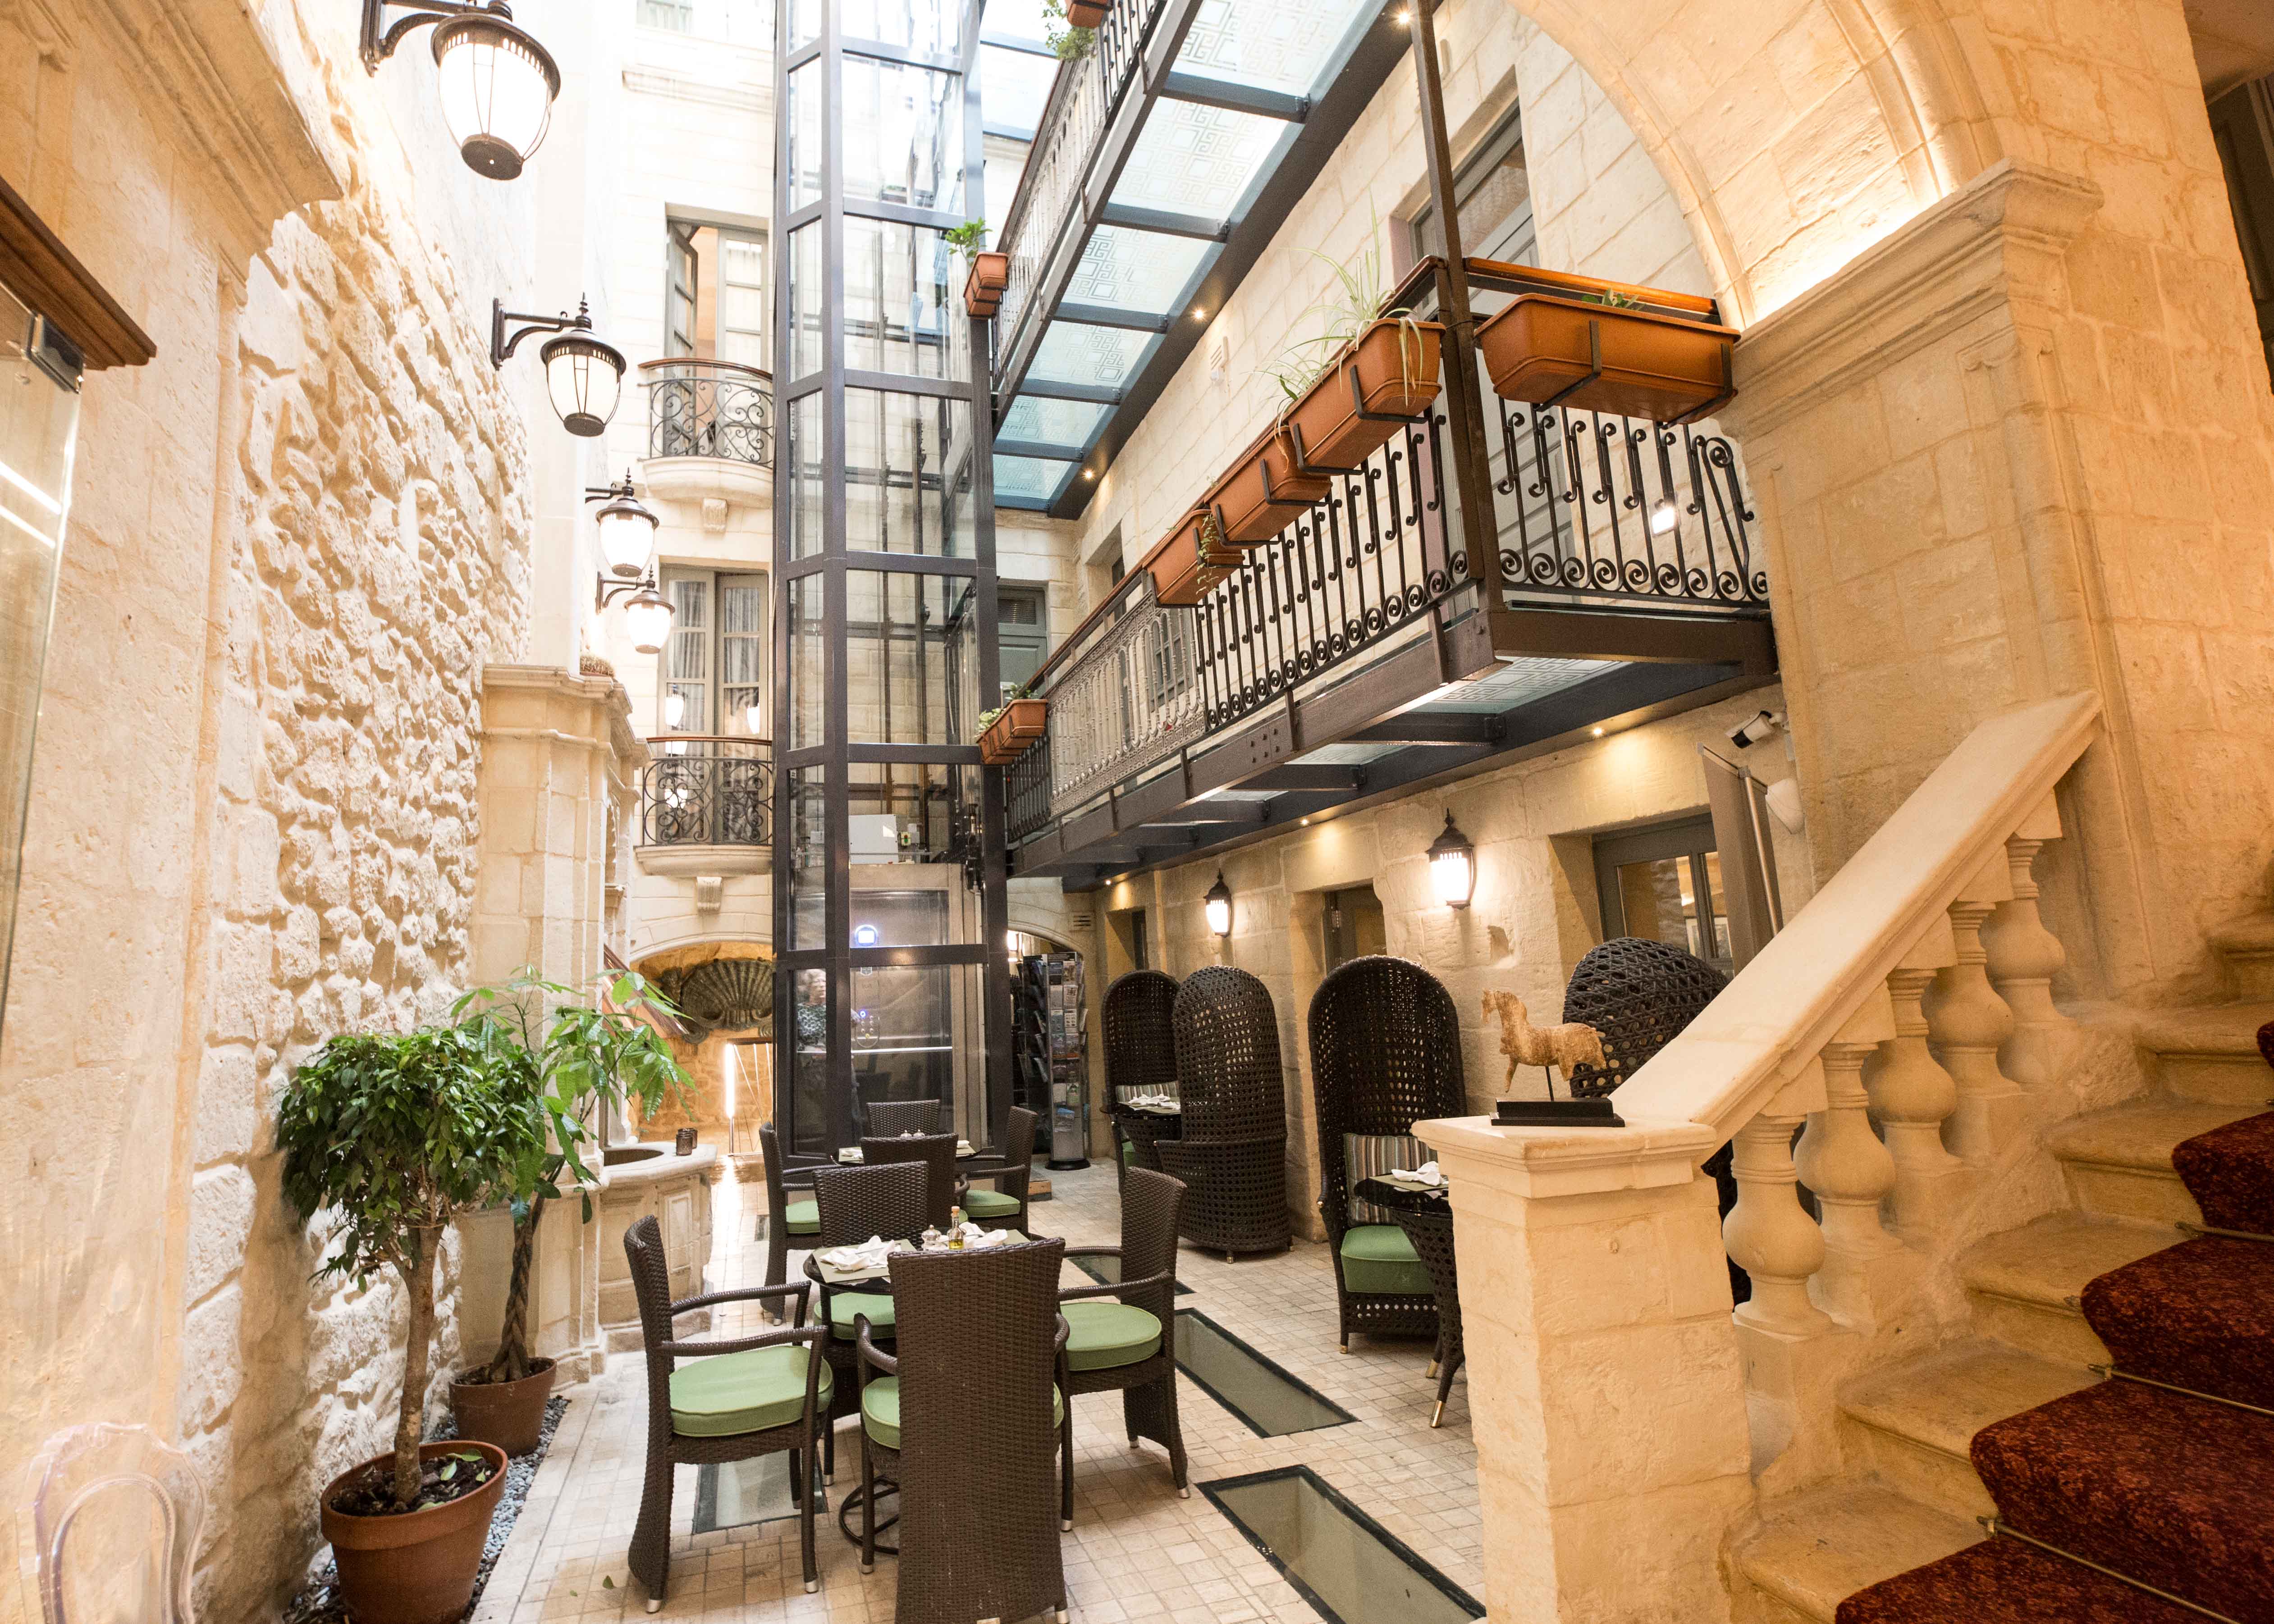 Where to stay in Valletta? Palazzo Consiglia